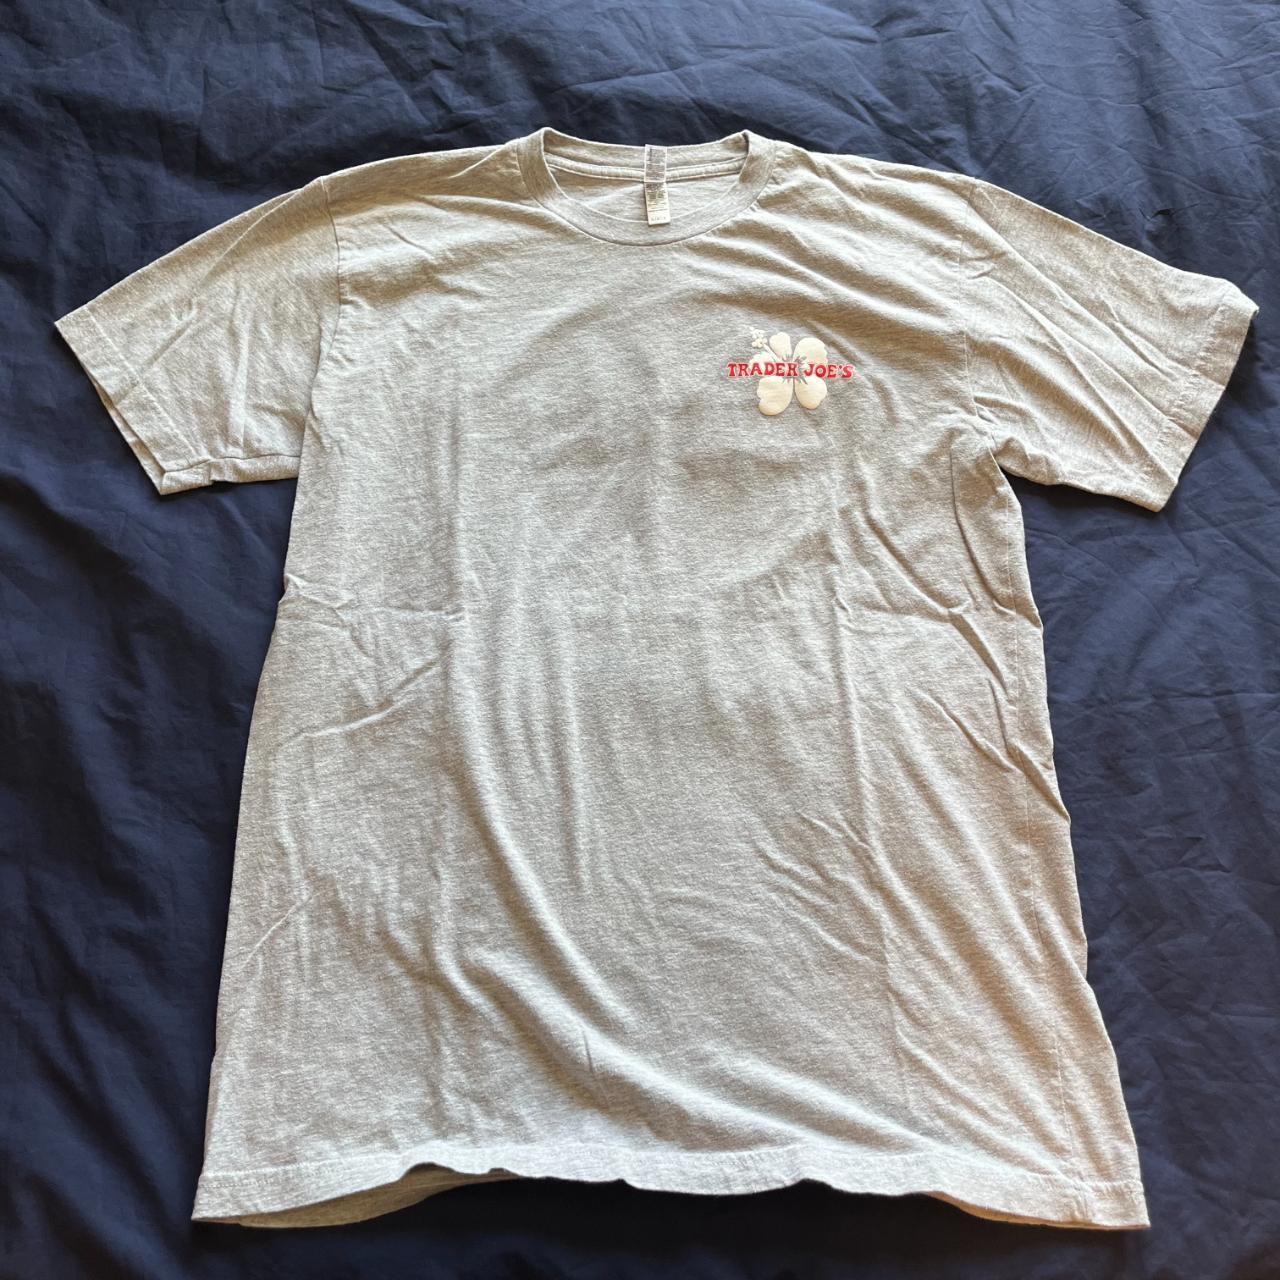 Trader Joe's Men's Grey T-shirt | Depop